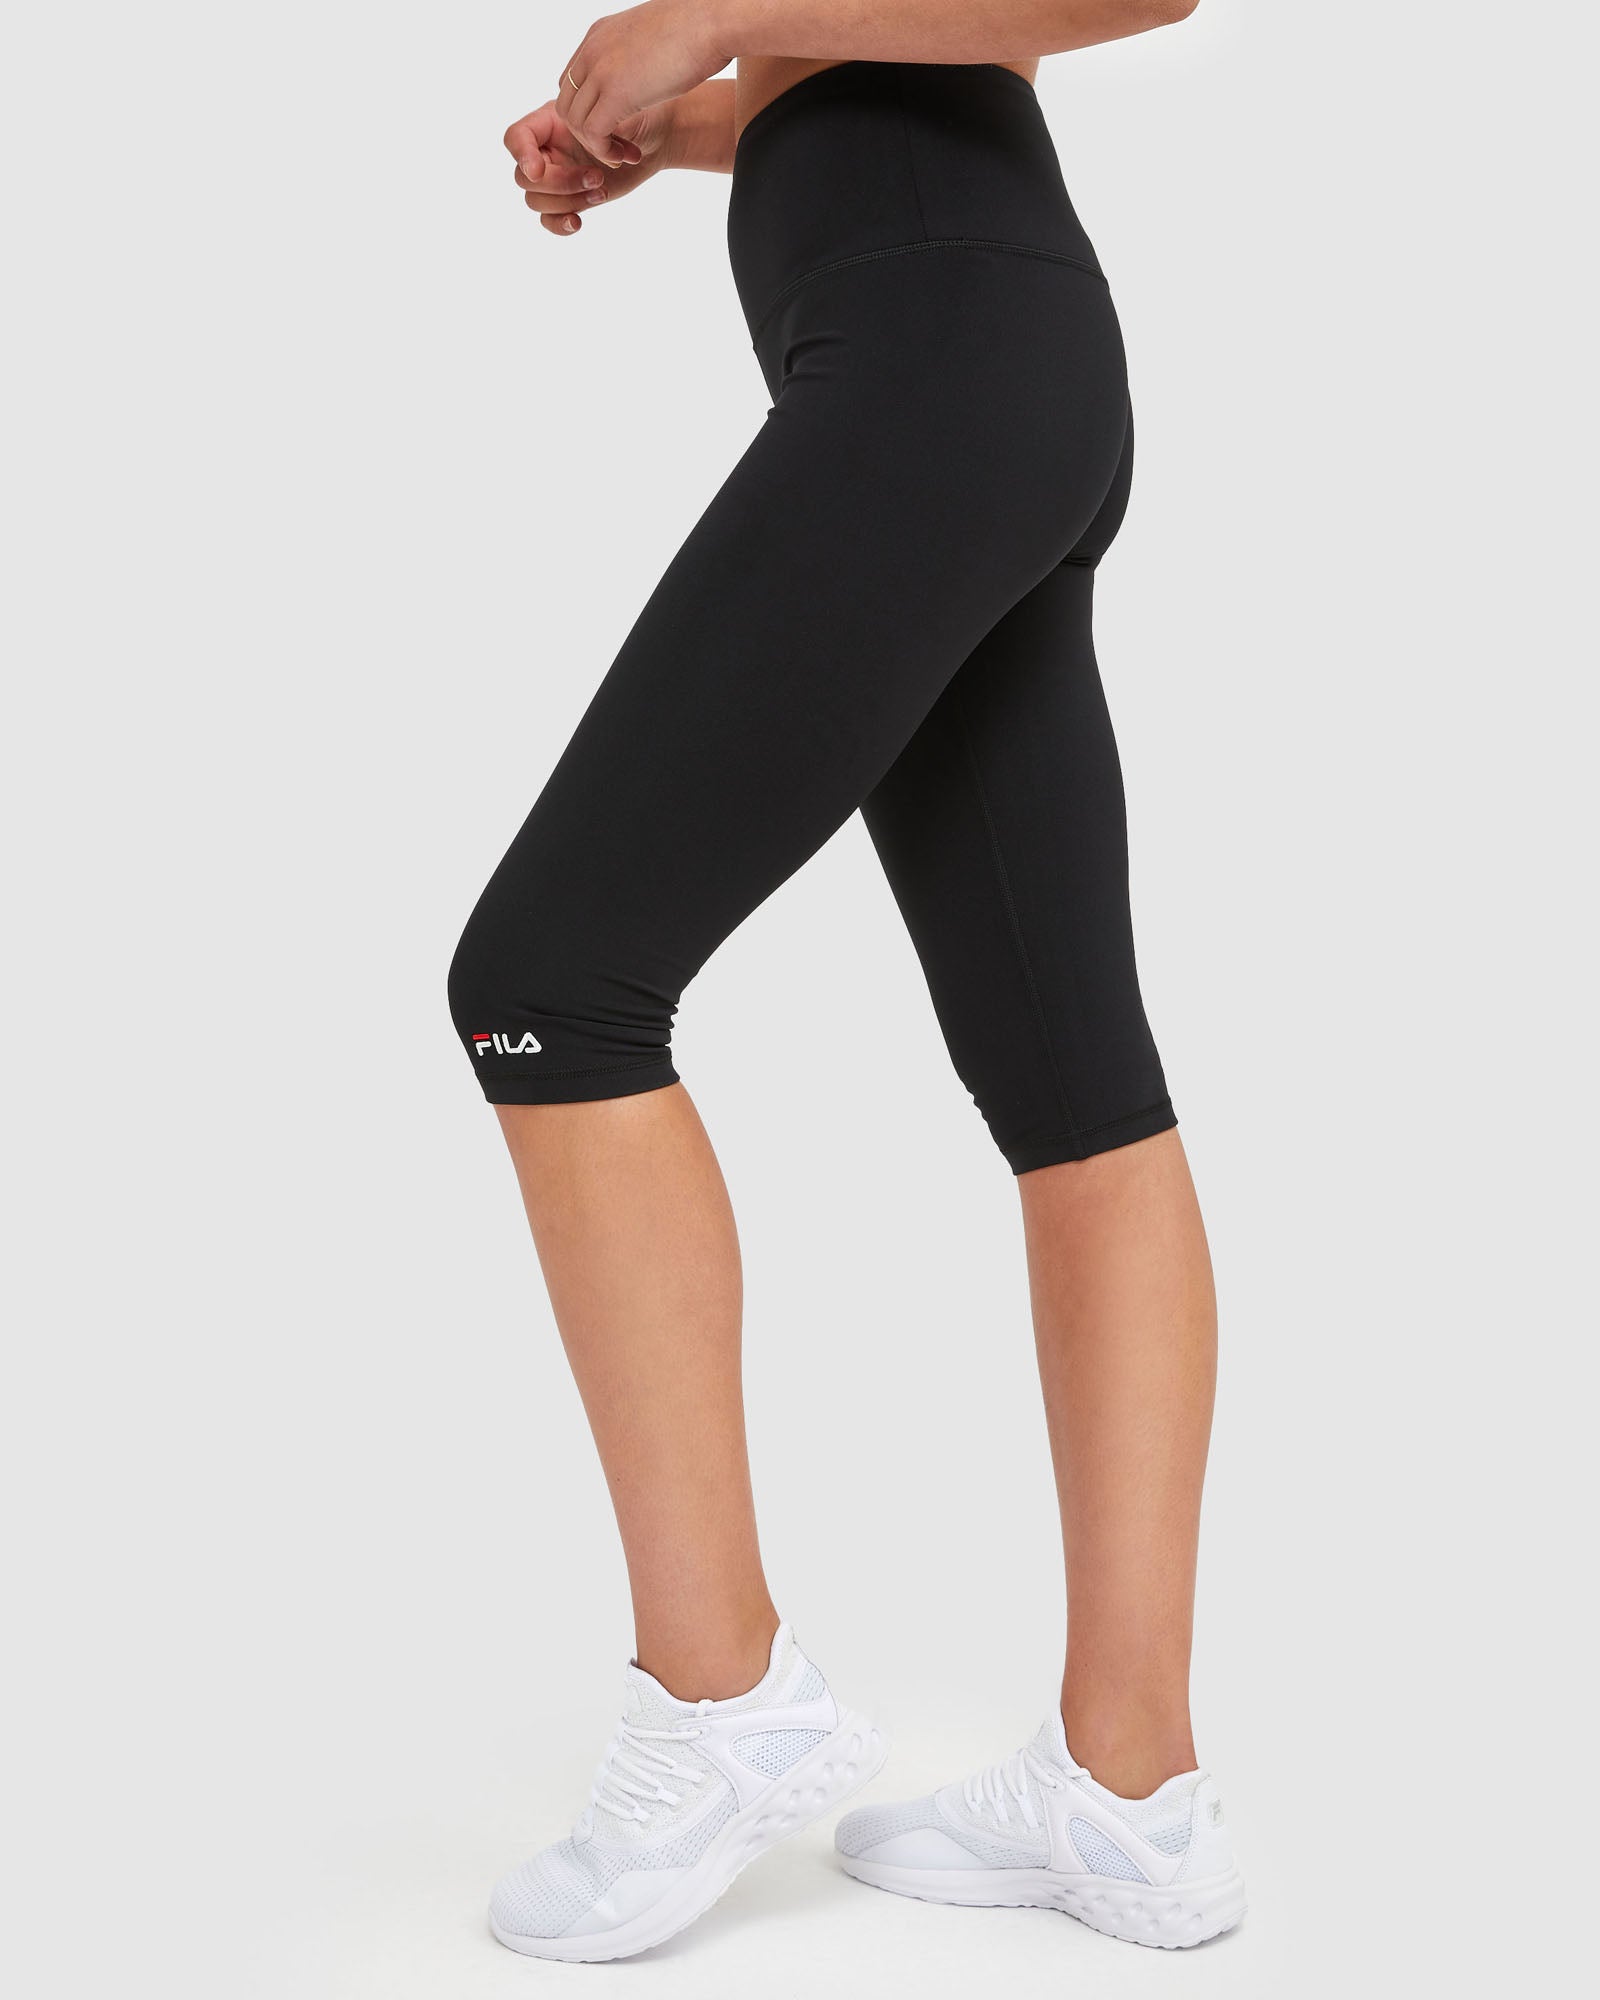 Buy Fila women capri plain leggings melange grey Online